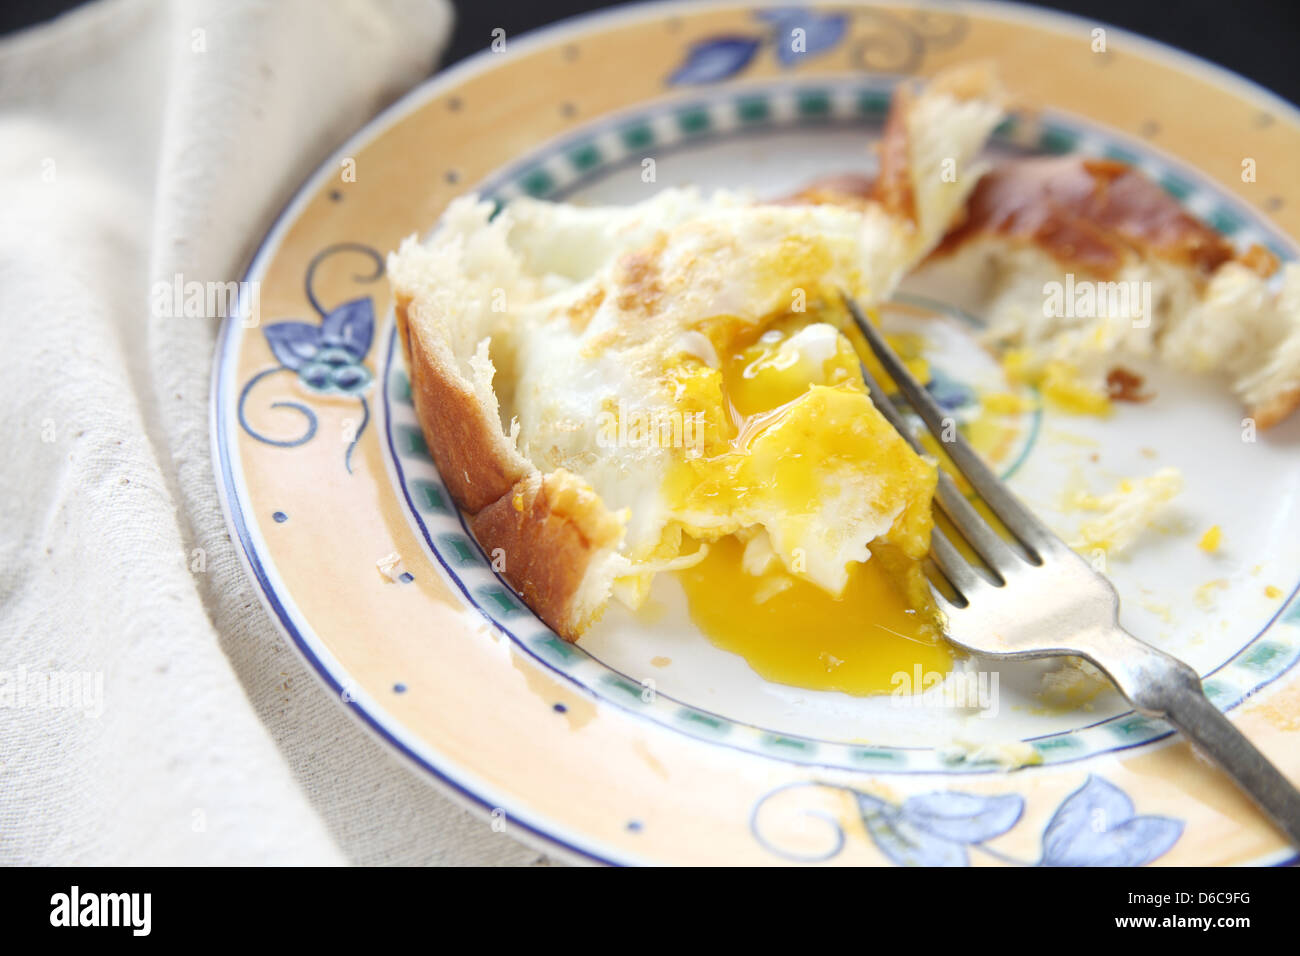 teilweise gegessen Frühstück mit Eiern und Brot auf dekorative Platte Stockfoto